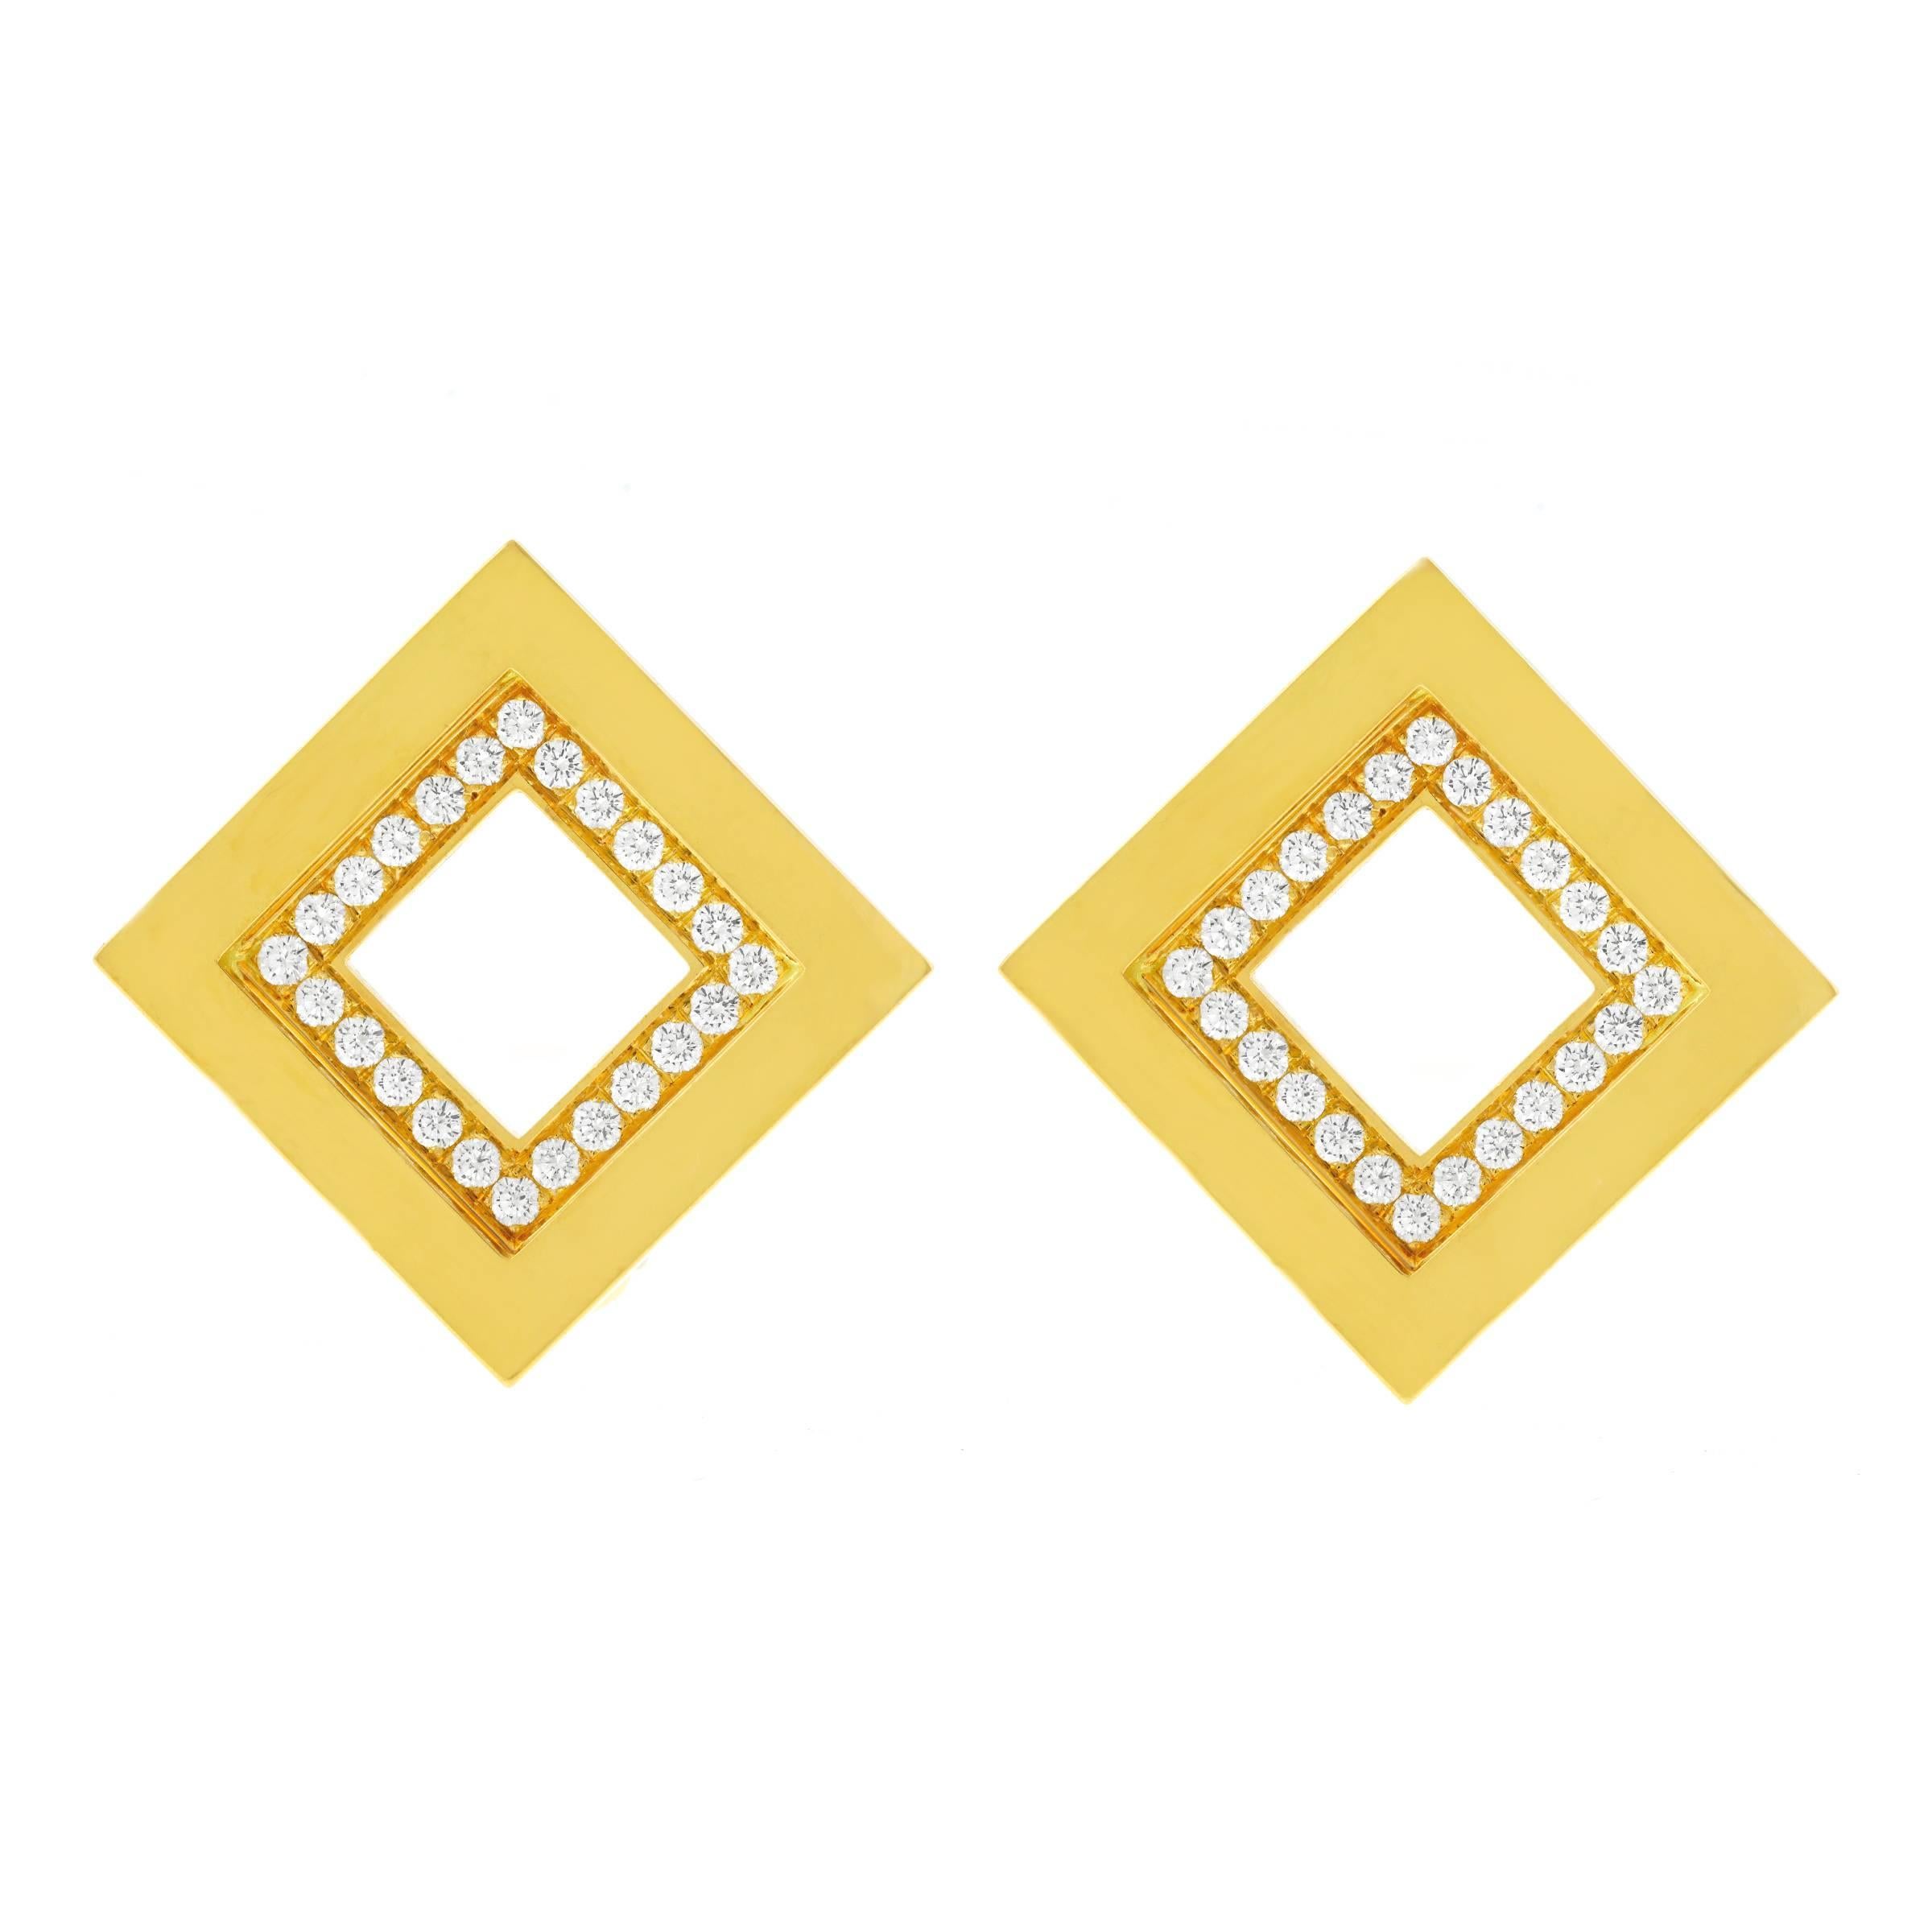 Blochliger Diamond Set Modernist Gold Earrings